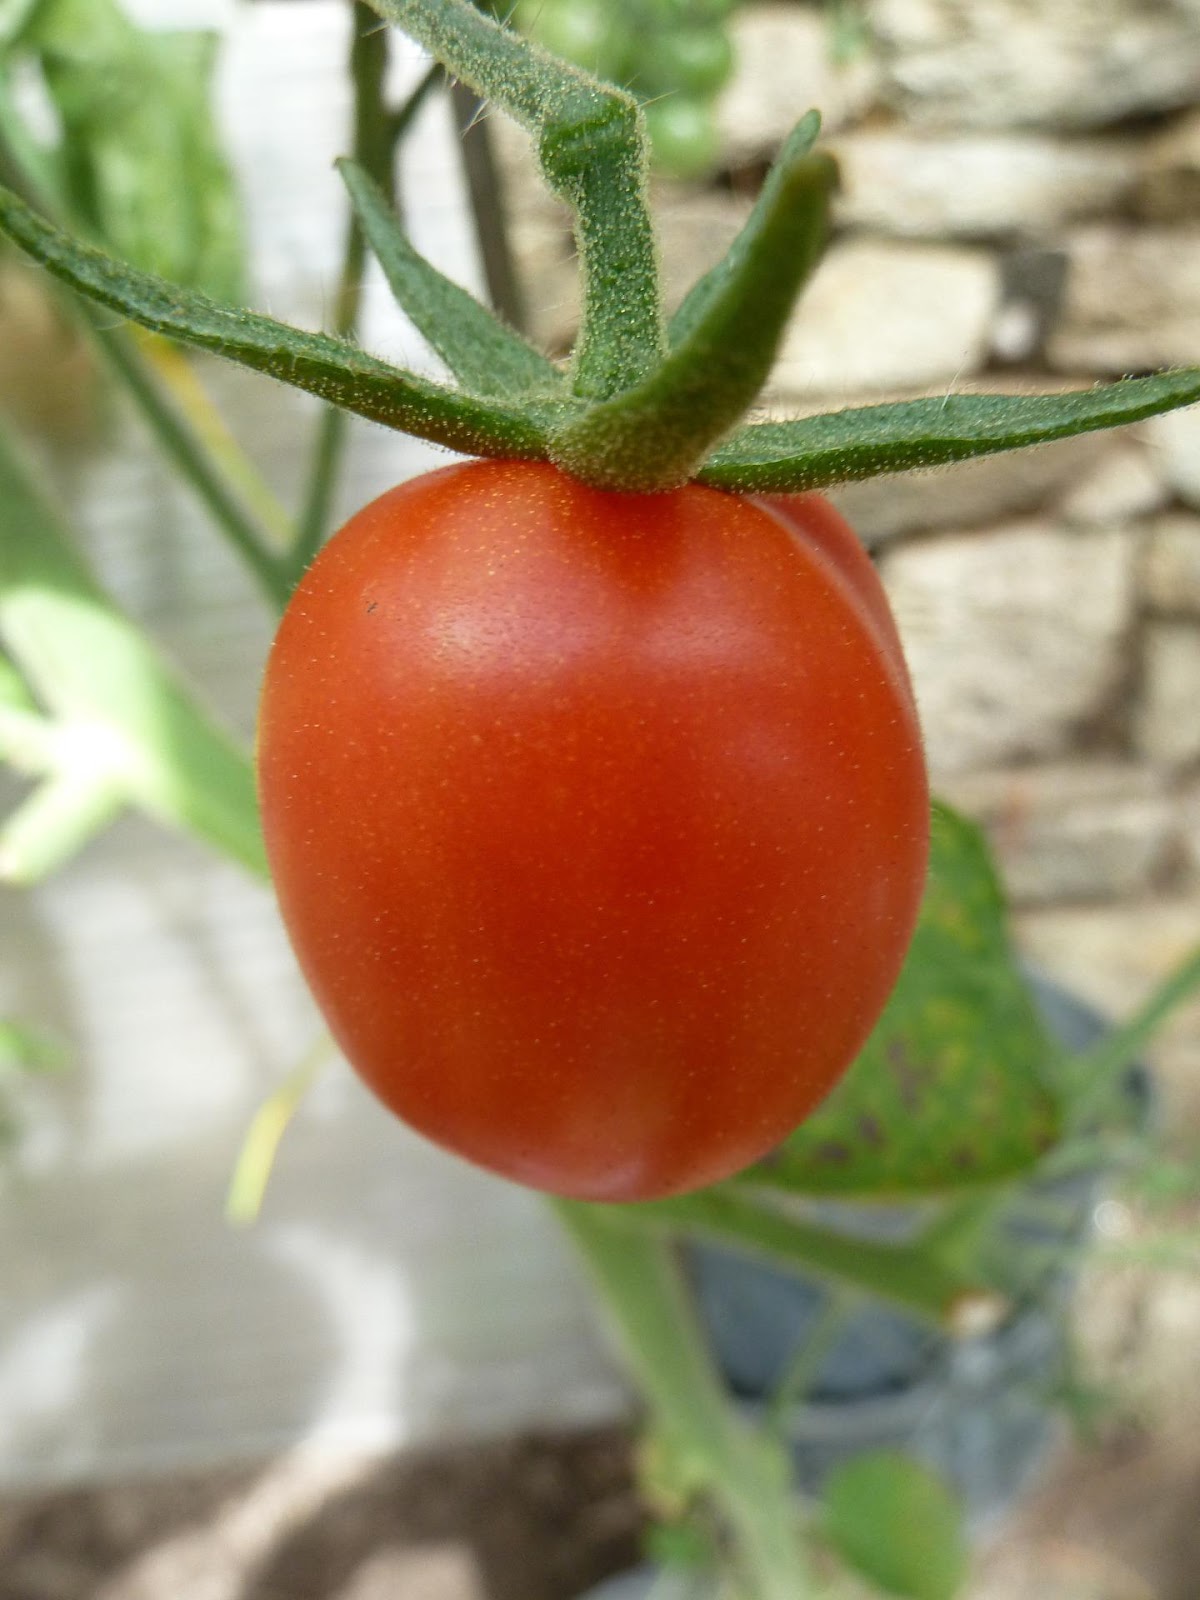 <b>Reste des sépales chez la tomate traduisant un ovaire supère</b><div><i>fruit-939618_1920, Image par marina32 de Pixabay , Pixabay licence, libre pour usage commercial, https://pixabay.com/fr/photos/fruit-tomate-rouge-les-produits-%C3%A9co-939618/</i><b><br></b></div>